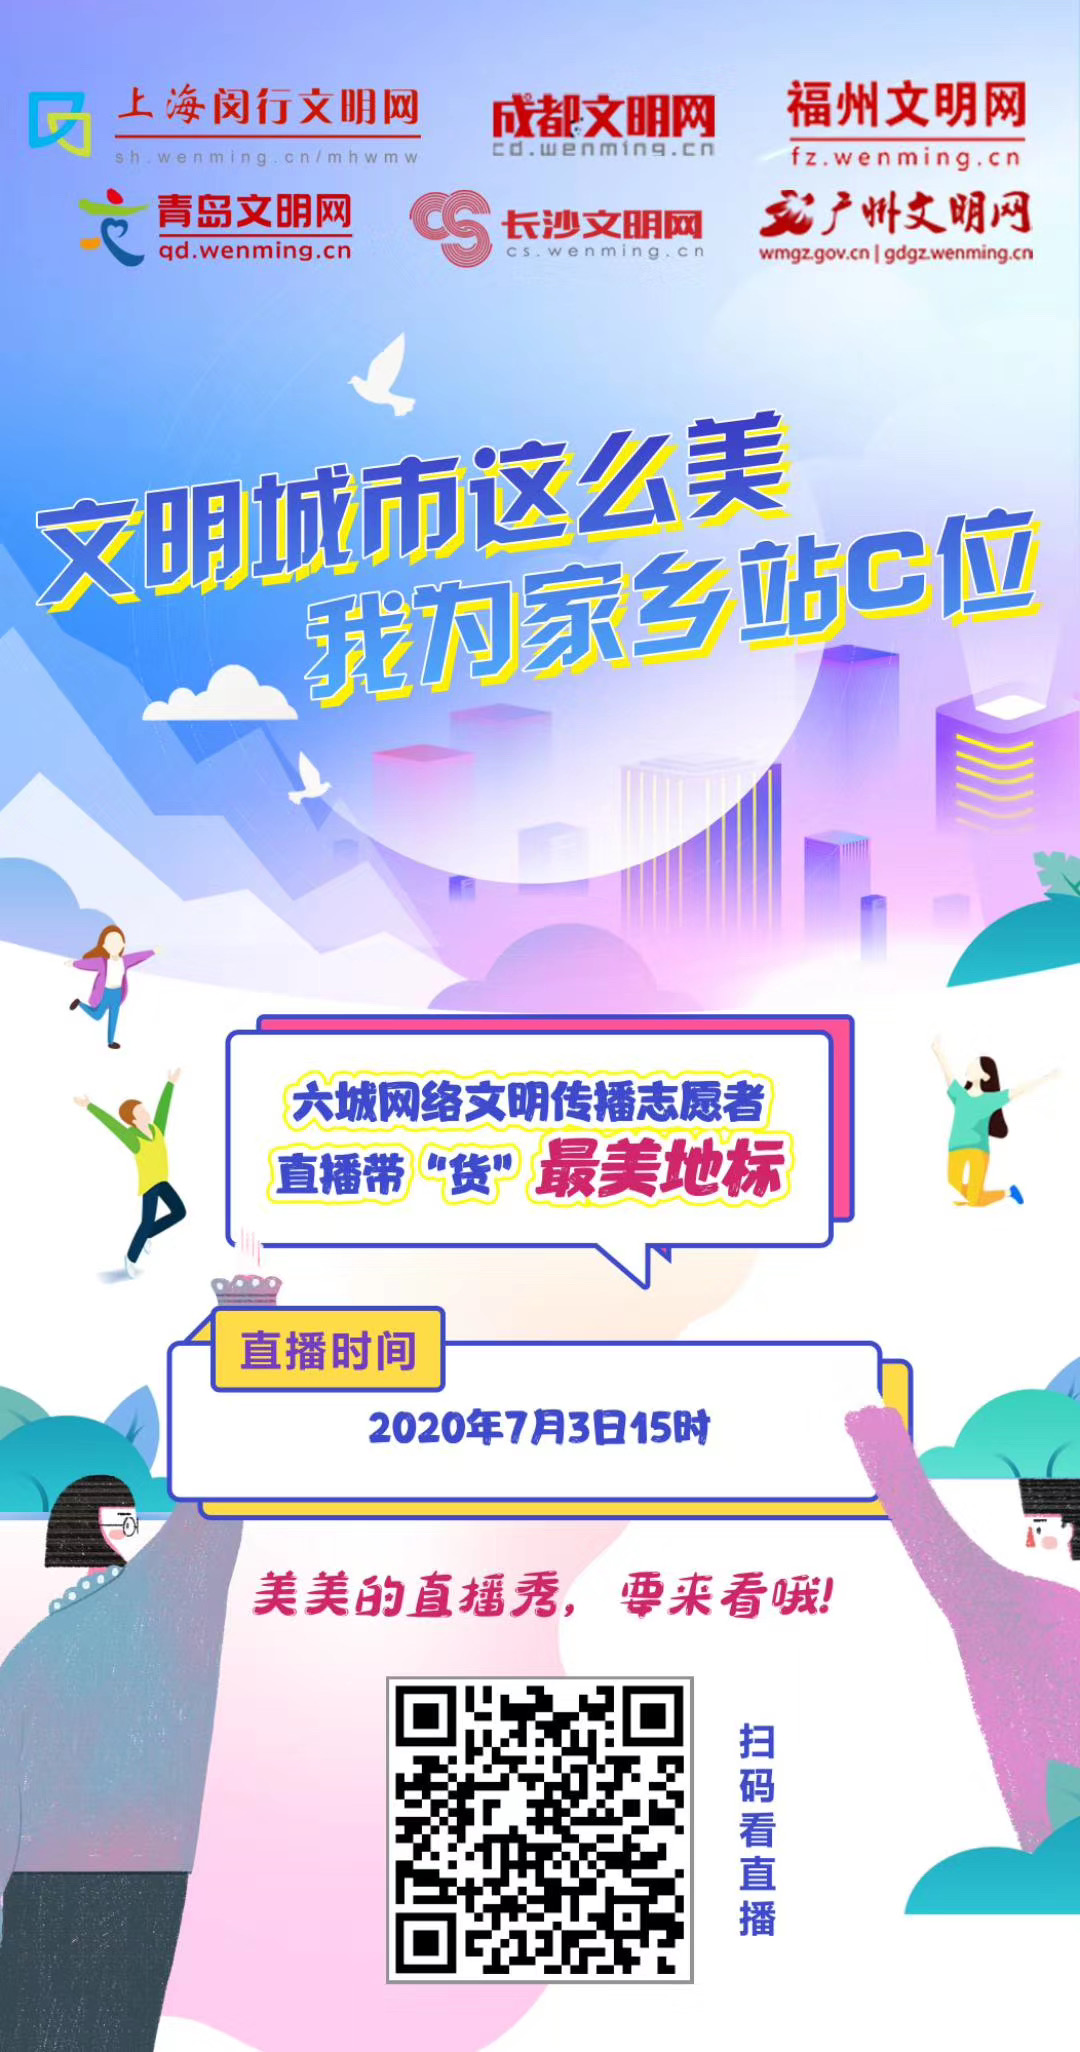 上海市闵行区、成都市、福州市、青岛市、长沙市、广州市六地文明网将在7月3日下午3时，联合开展“文明城市这么美，我为家乡站C位”网络文明传播活动。